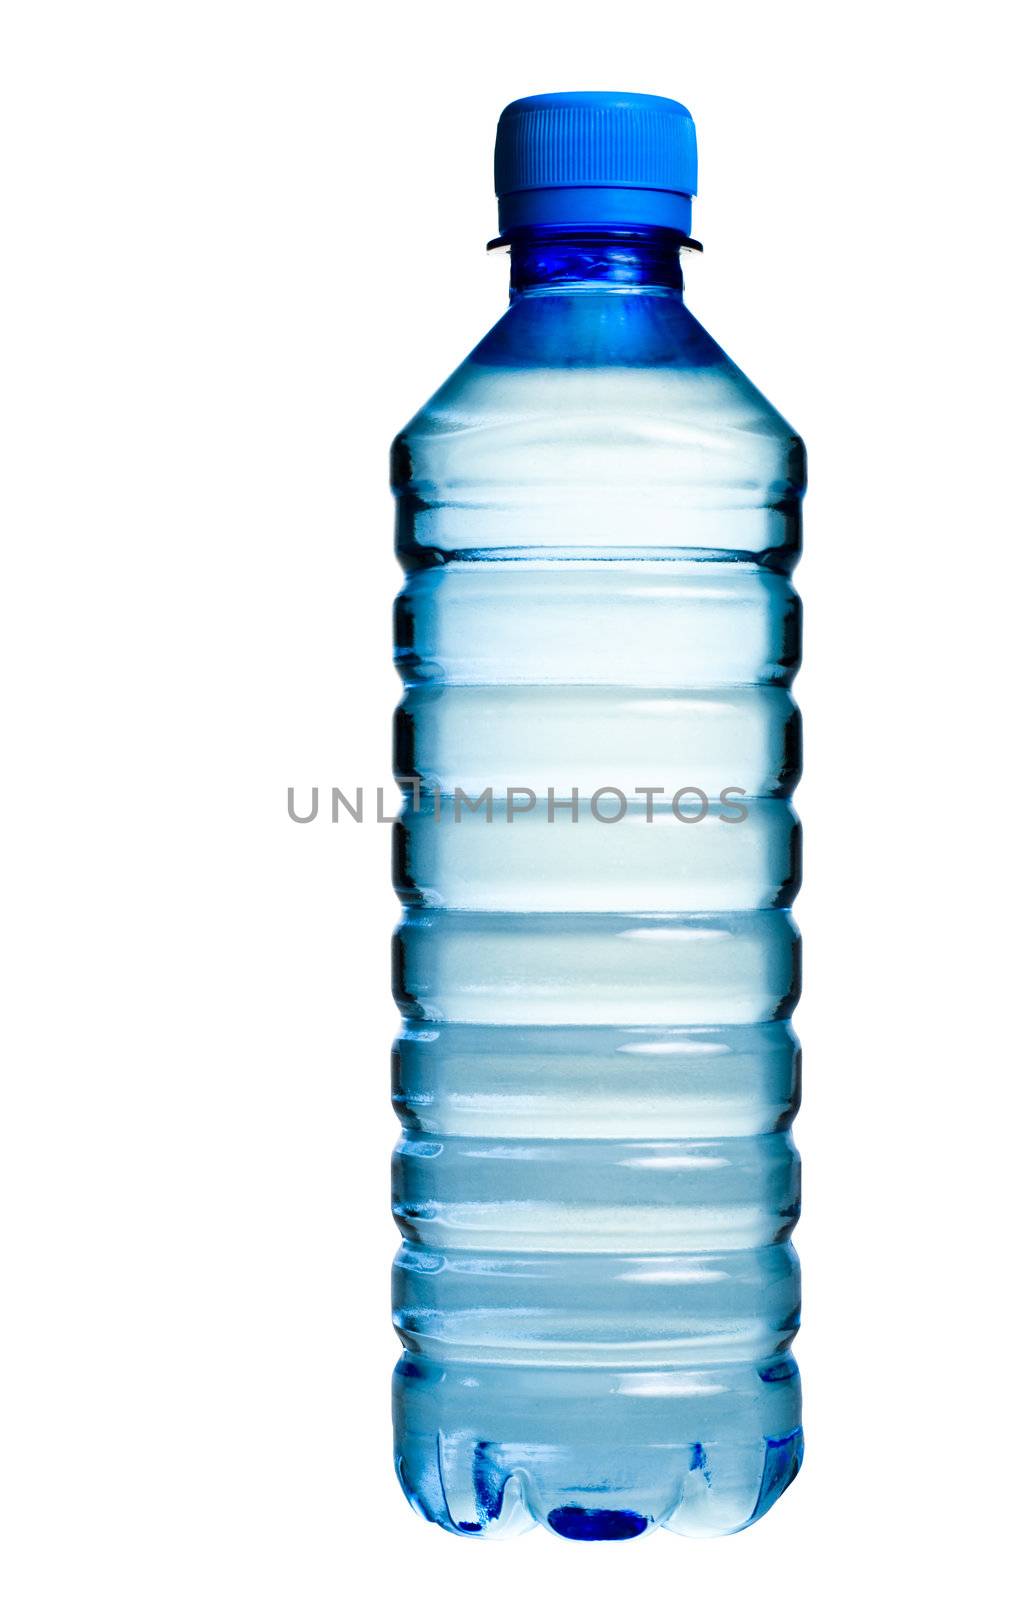 Bottled water by naumoid